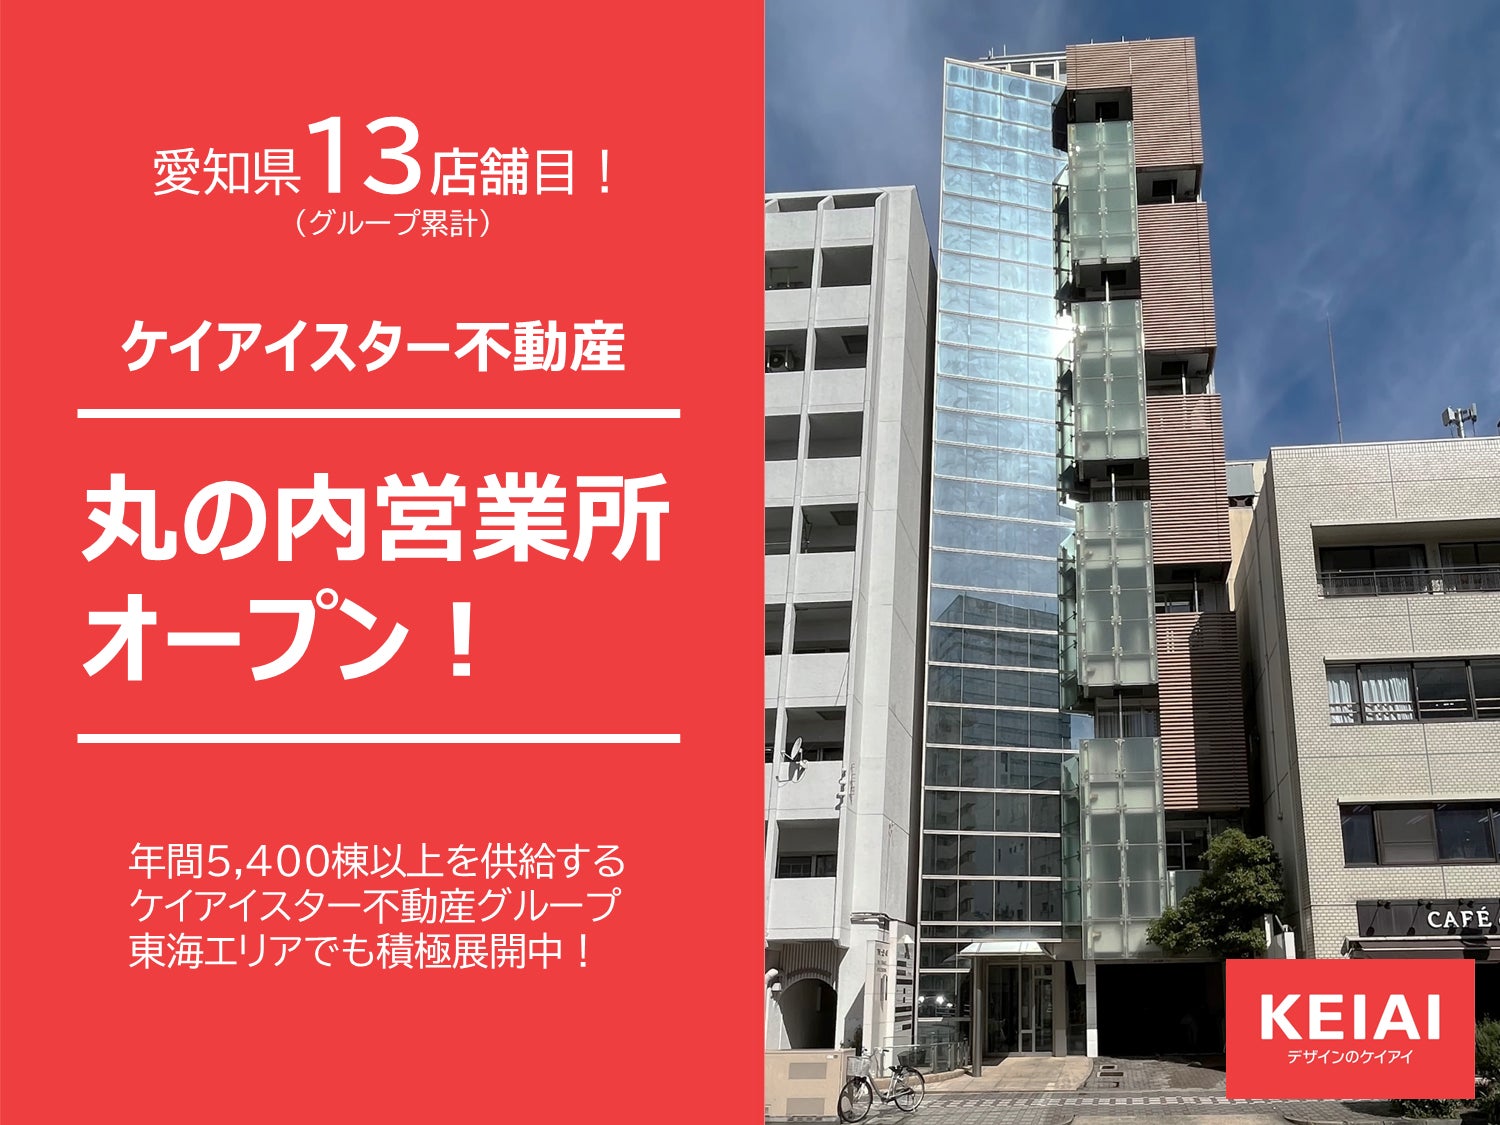 ケイアイスター不動産愛知県名古屋市に新たに丸の内営業所を開設のサブ画像1